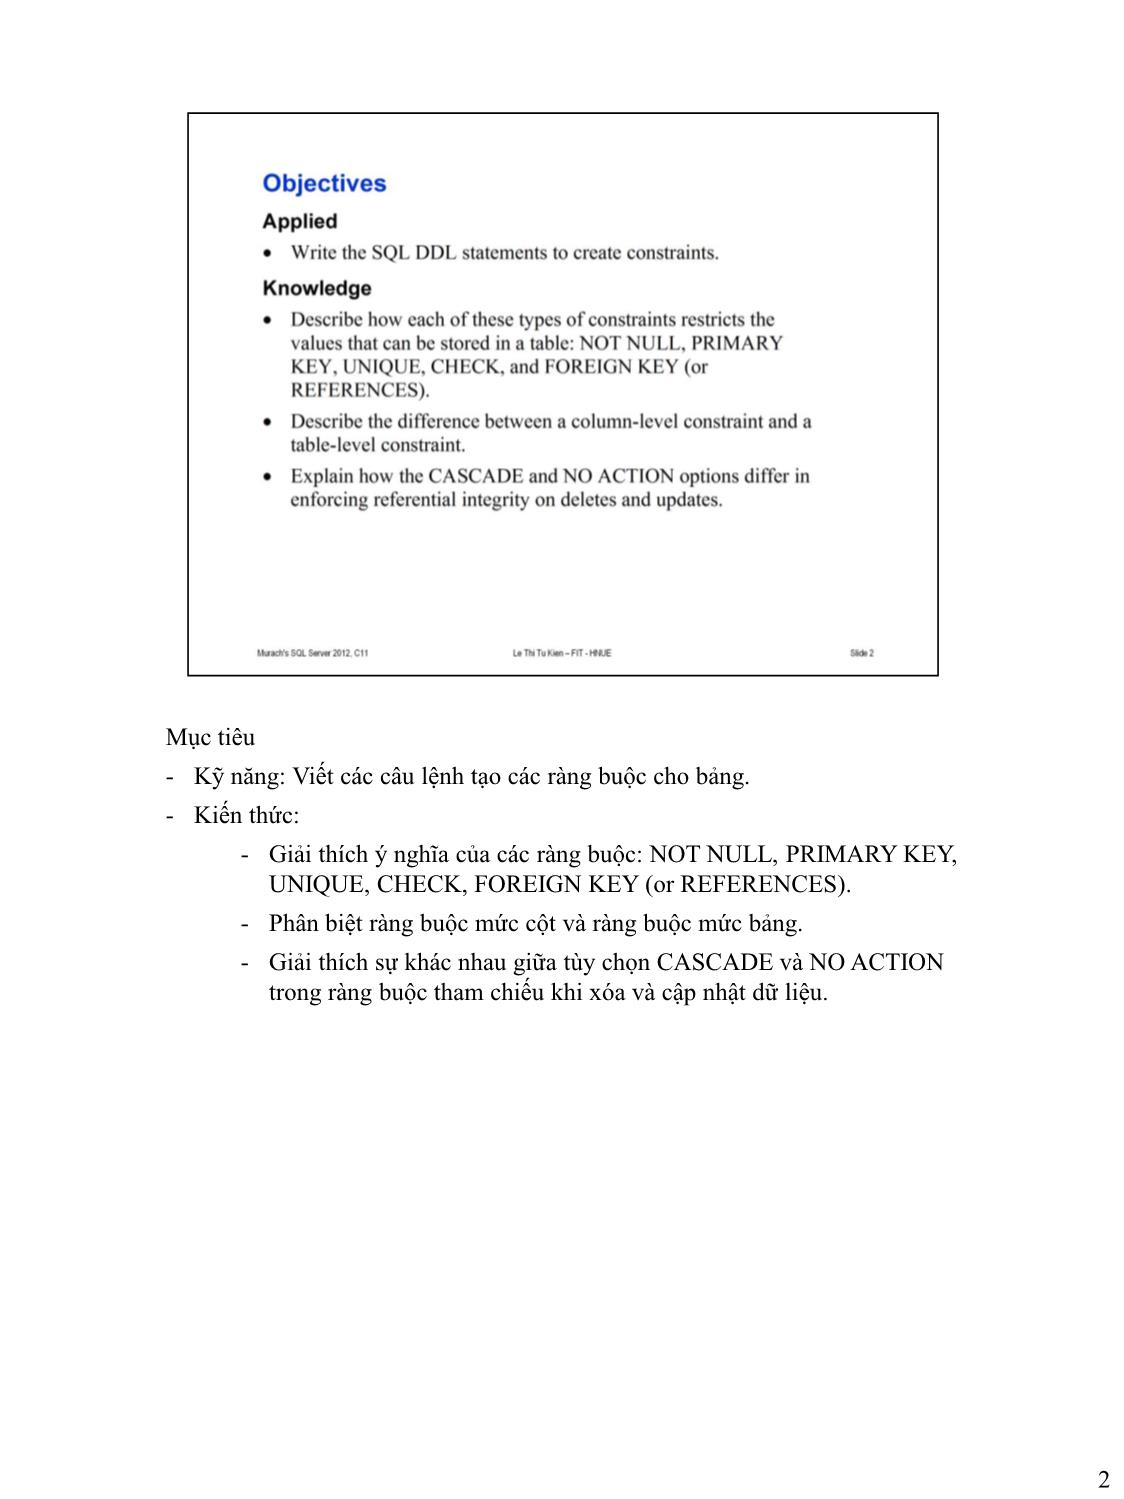 Bài giảng Microsoft SQL Server - Bài 9: Các ràng buộc cho bảng - Lê Thị Tú Kiên trang 2